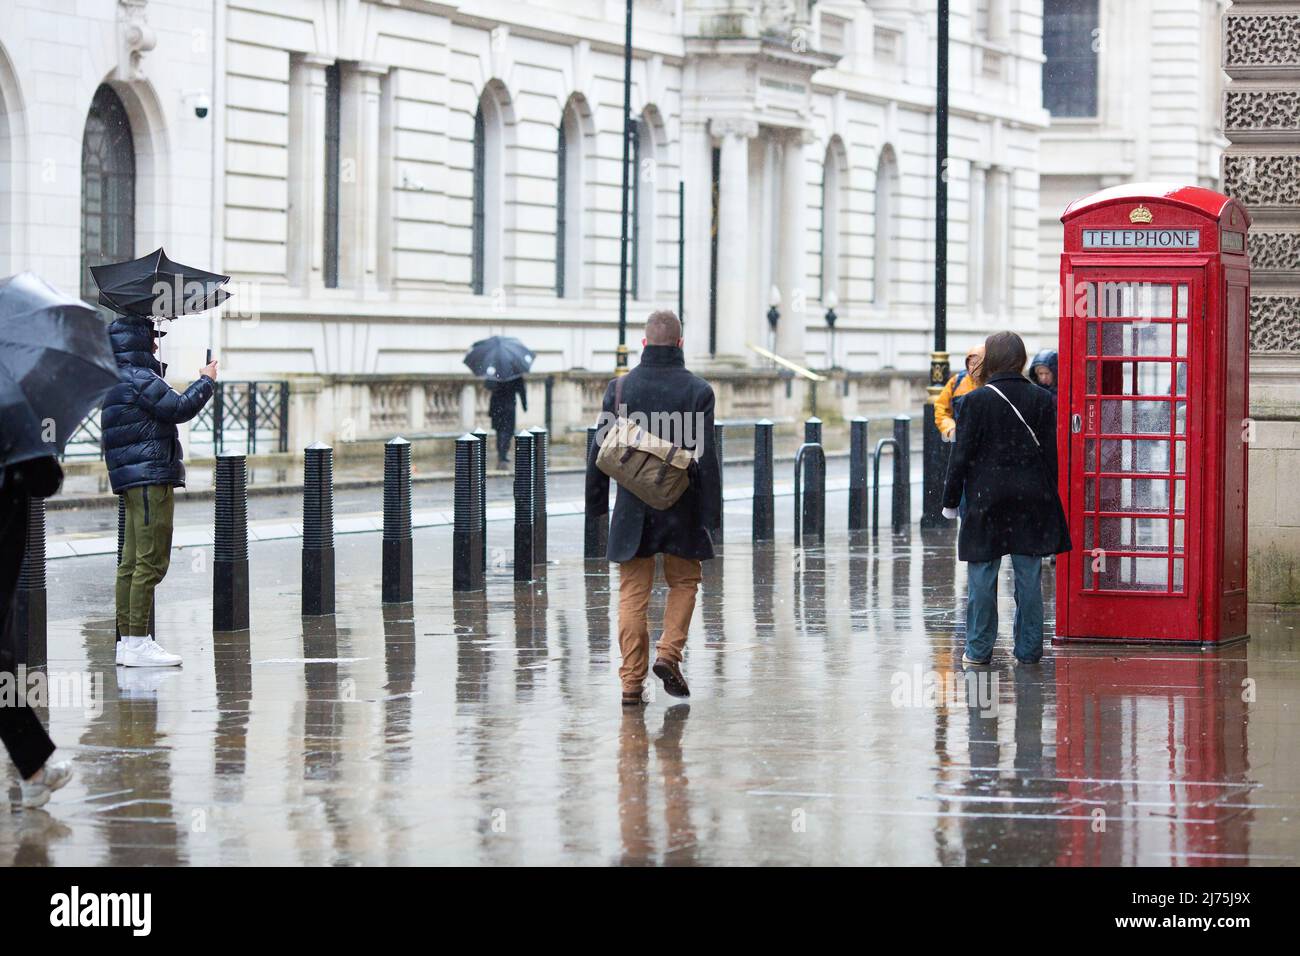 Une personne dont le parapluie est vu soufflé par le vent prend une photo de sa compagnie lorsqu'un piéton les passe devant à Westminster, dans le centre de Londres. Banque D'Images